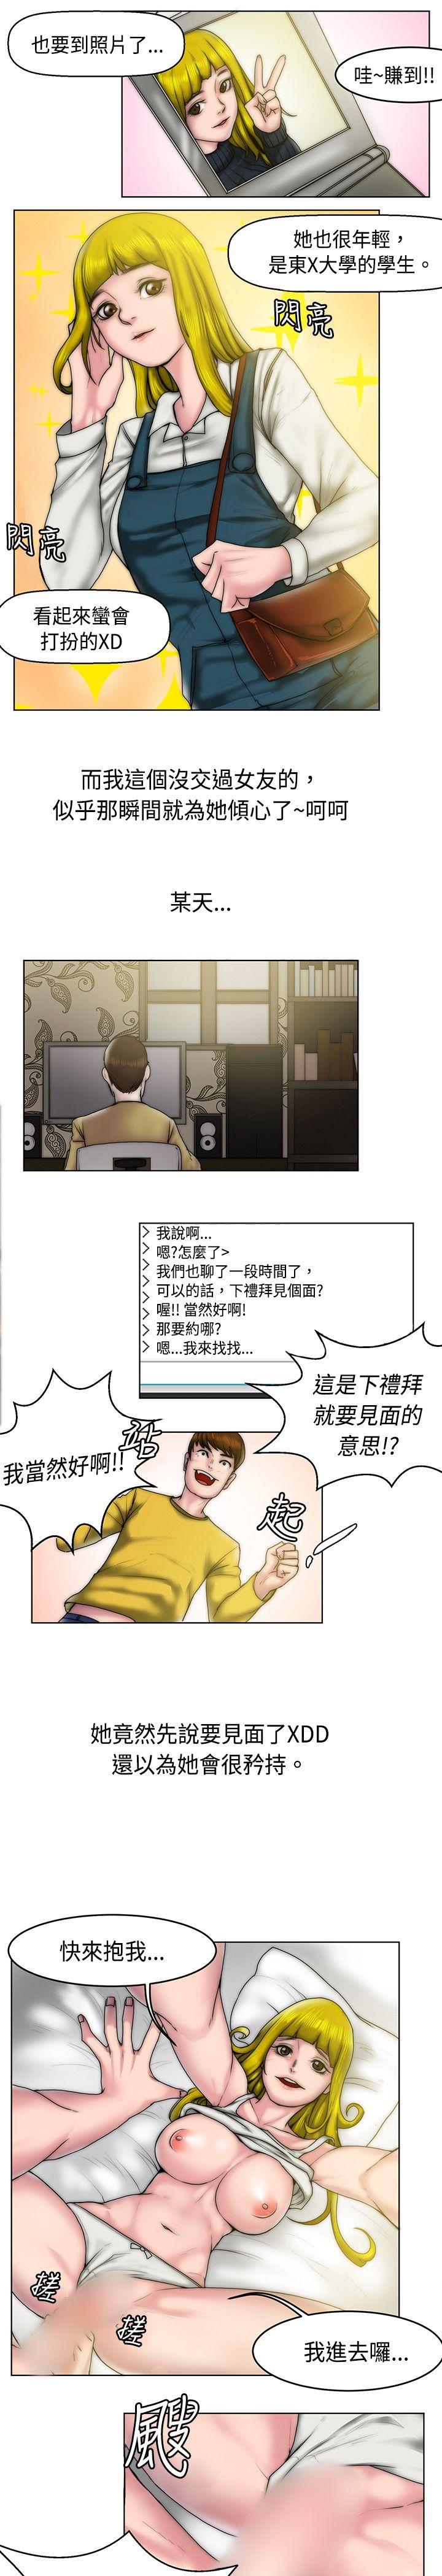 韩国污漫画 秘密Story 初恋被朋友抢(上) 5